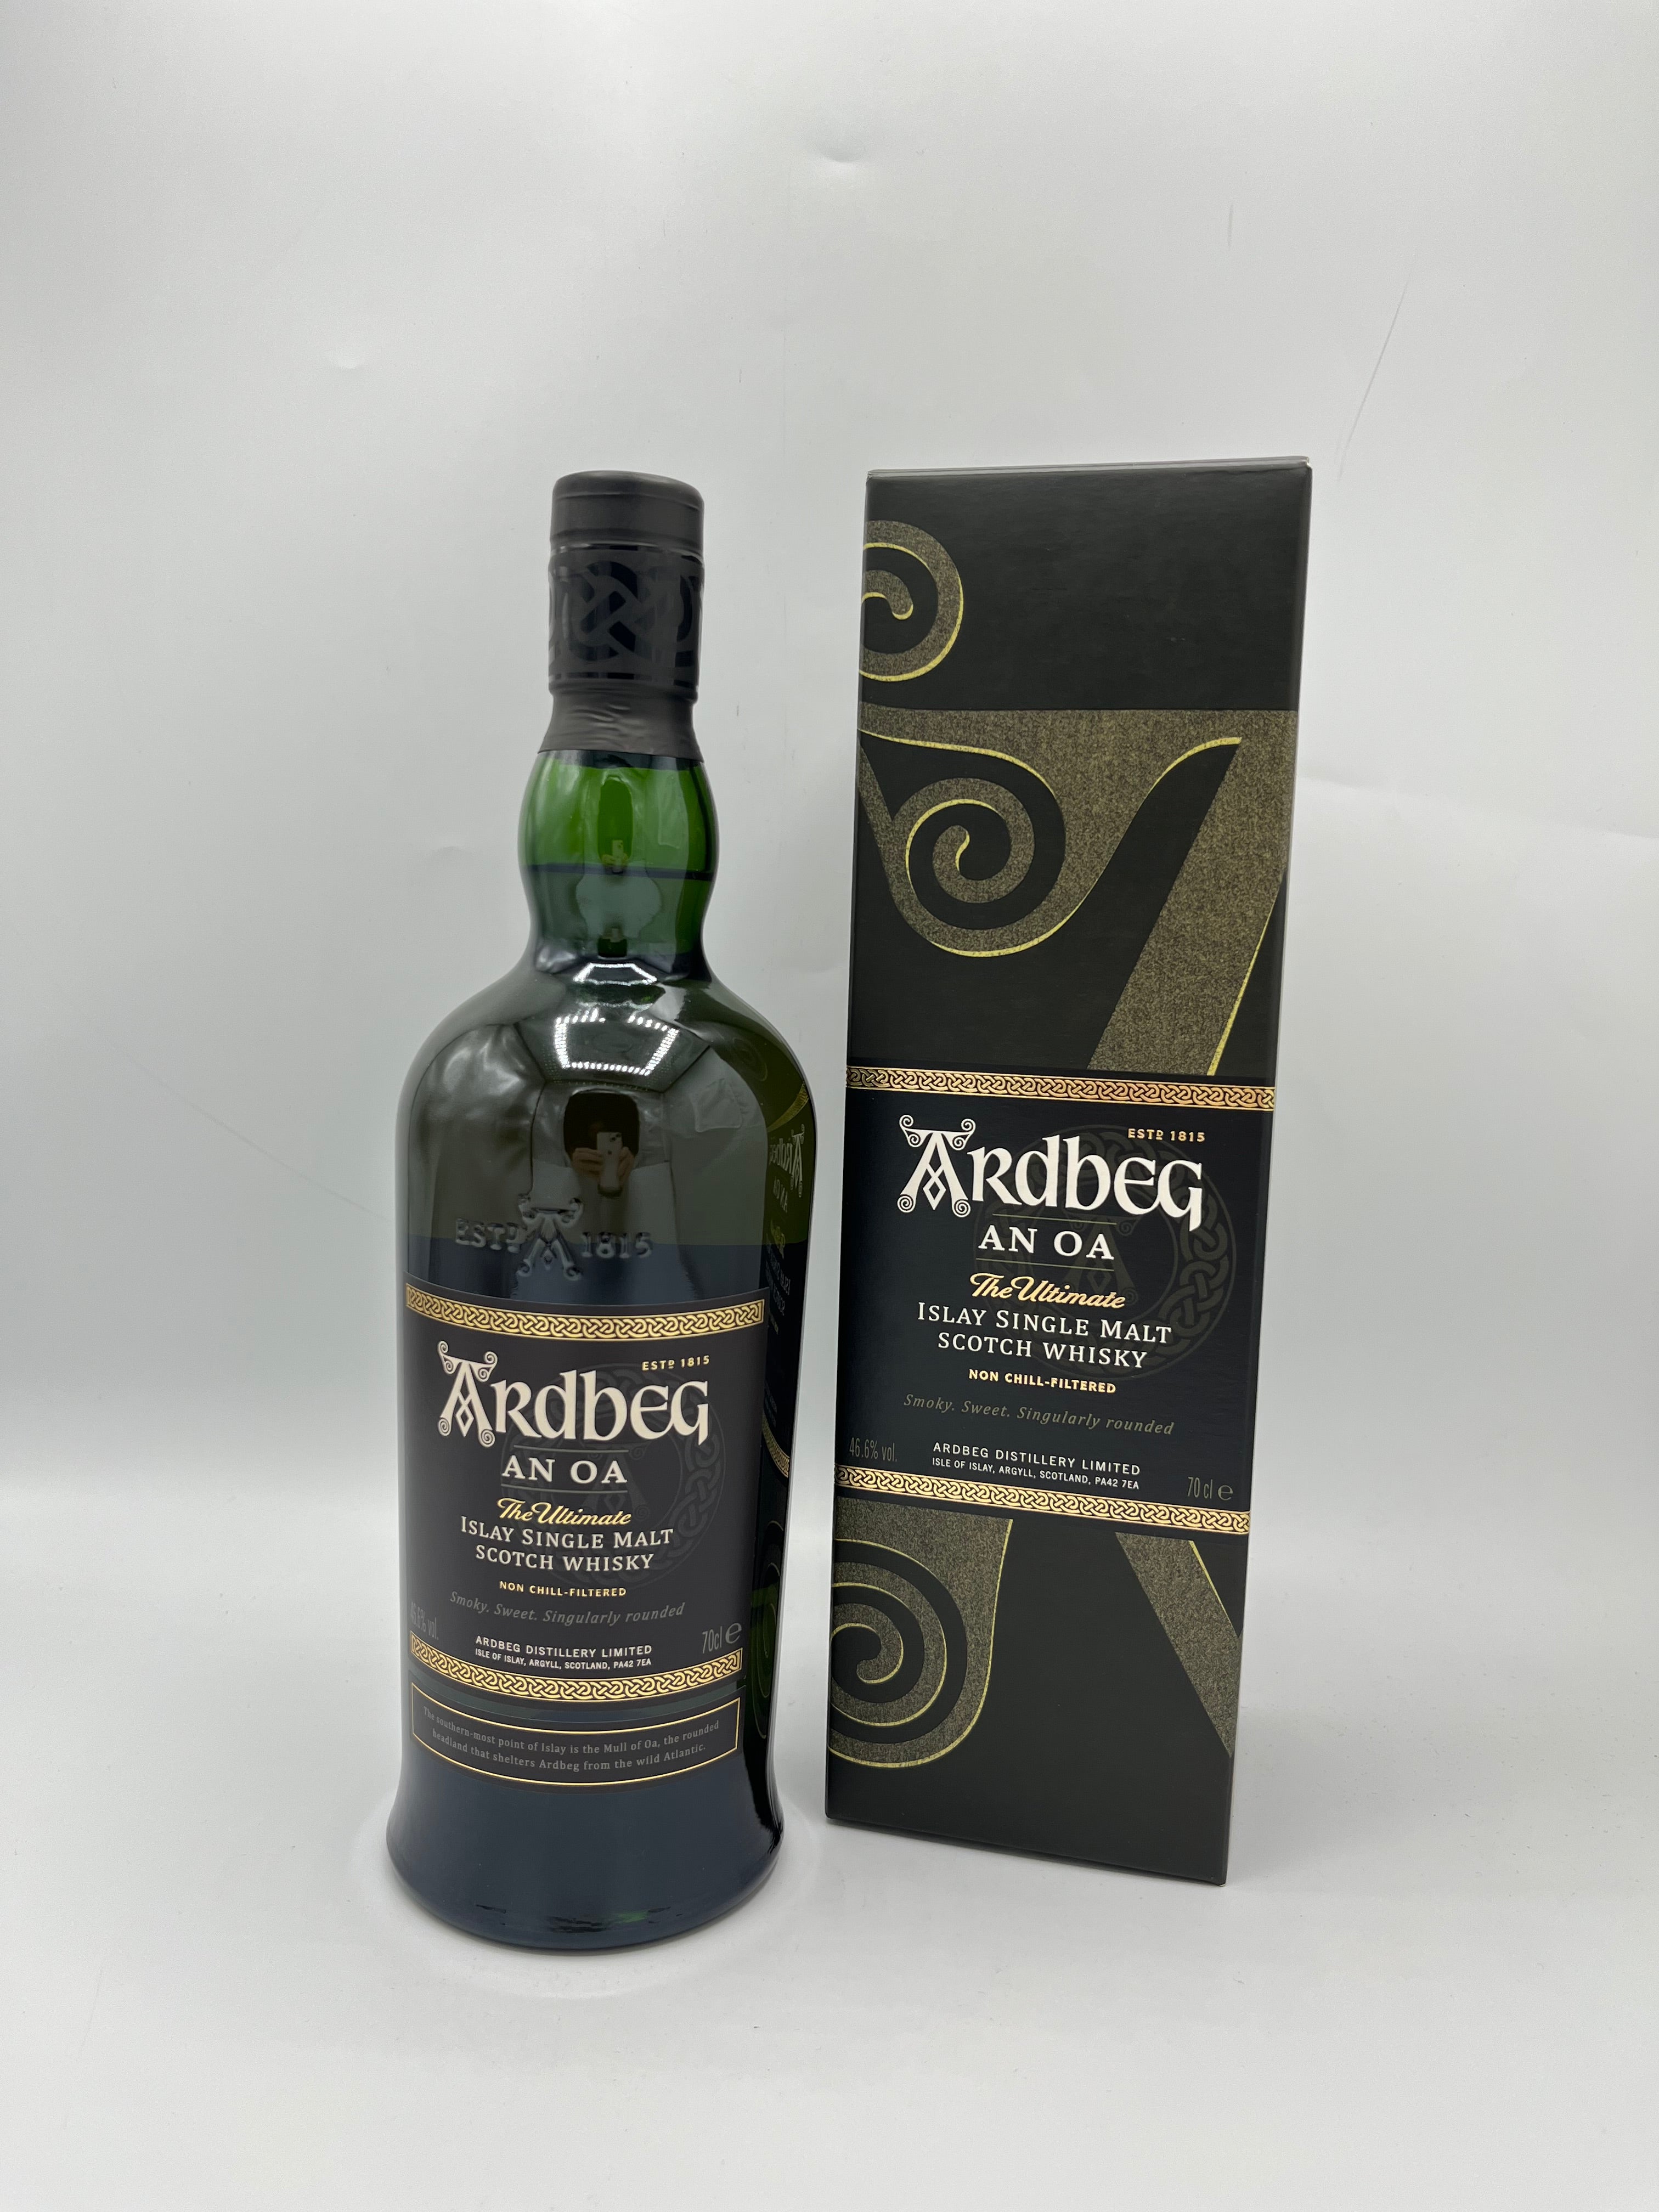 Ardbeg "An Oa" - Islay Single Malt Scotch Whisky